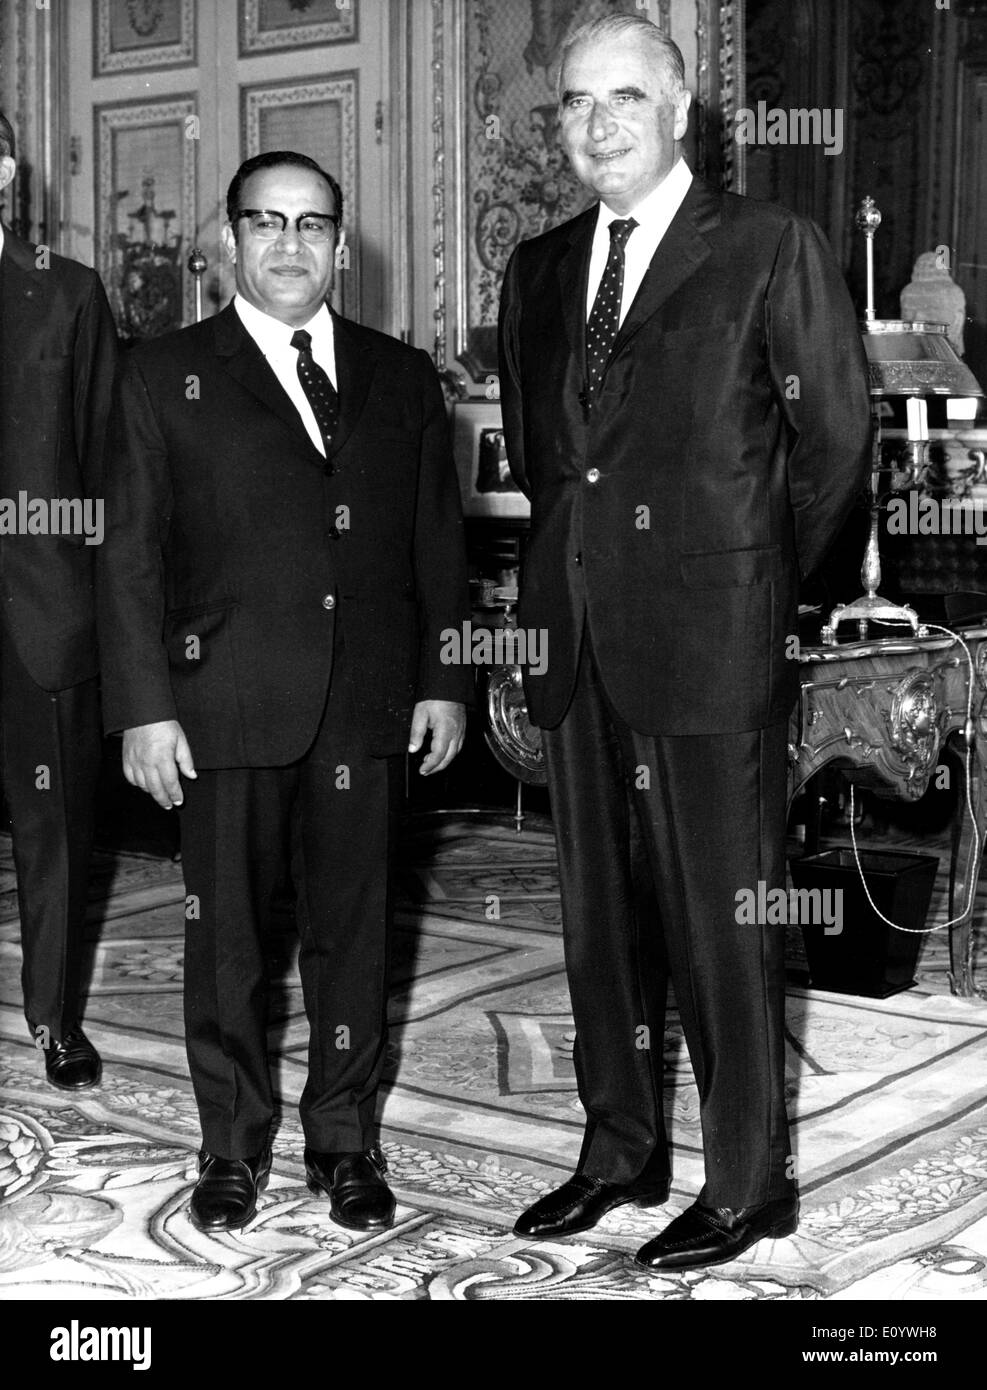 Aug 02, 1971; Paris, Francia; Ambasciatore dell'Arabian Republique dello Yemen, il sig. MOSHEN -ALAINI, ha presentato le sue credenziali al Presidente GEORGES POMPIDOU a Palais de L'Elysee. Foto Stock